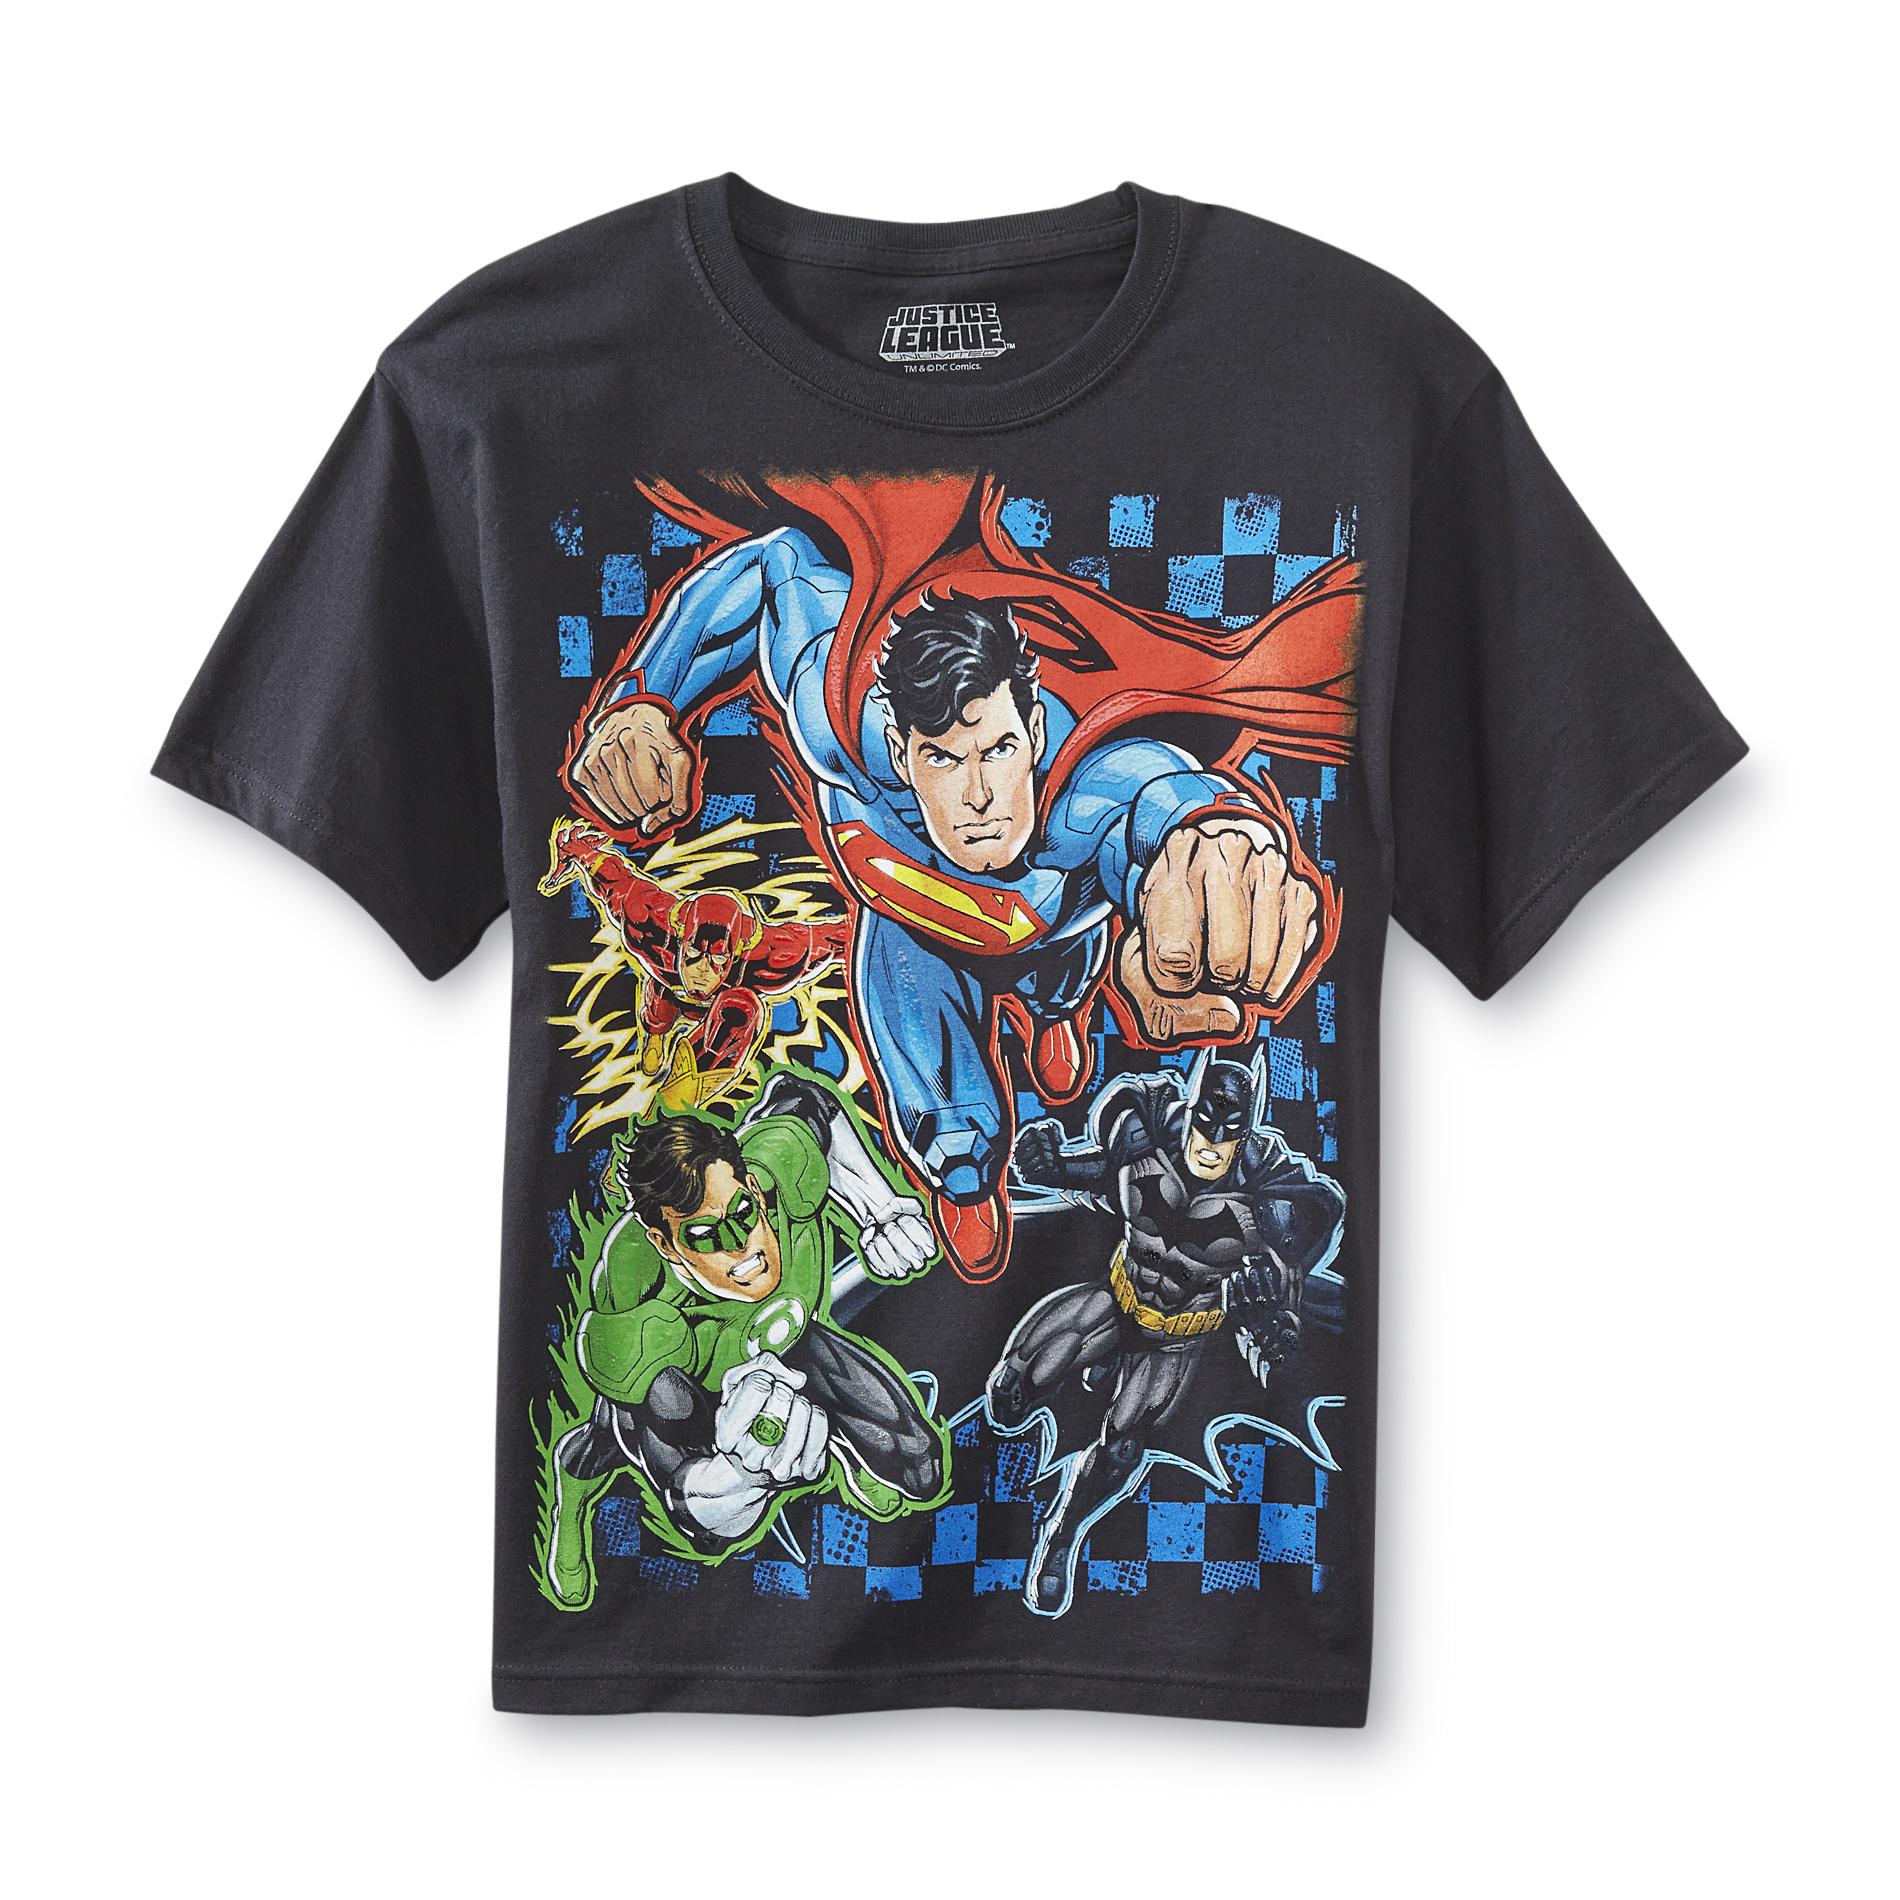 DC Comics Boy's Graphic T-shirt - Justice League